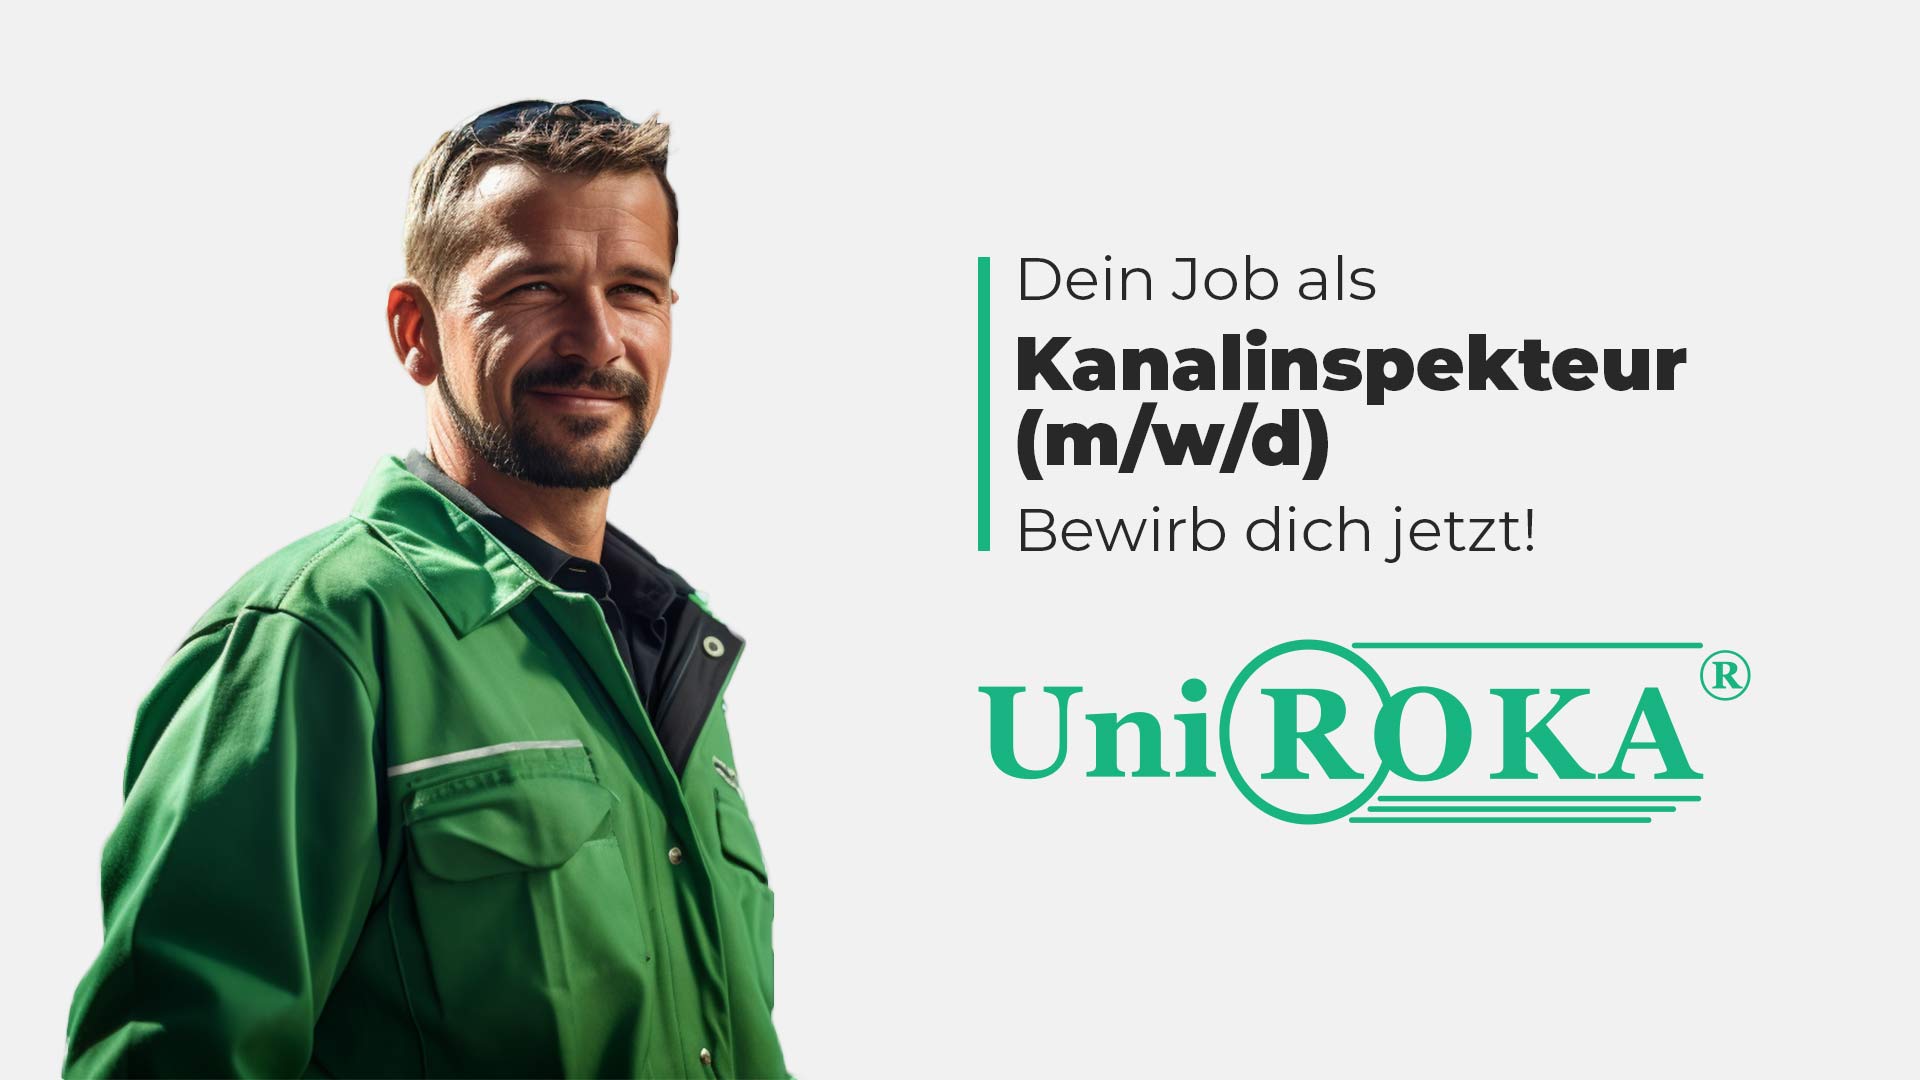 Zu sehen ist ein Handwerker mit grüner Jacke, Stellenanzeige für einen Job als Kanalinspekteur bei Uni Roka Rostock